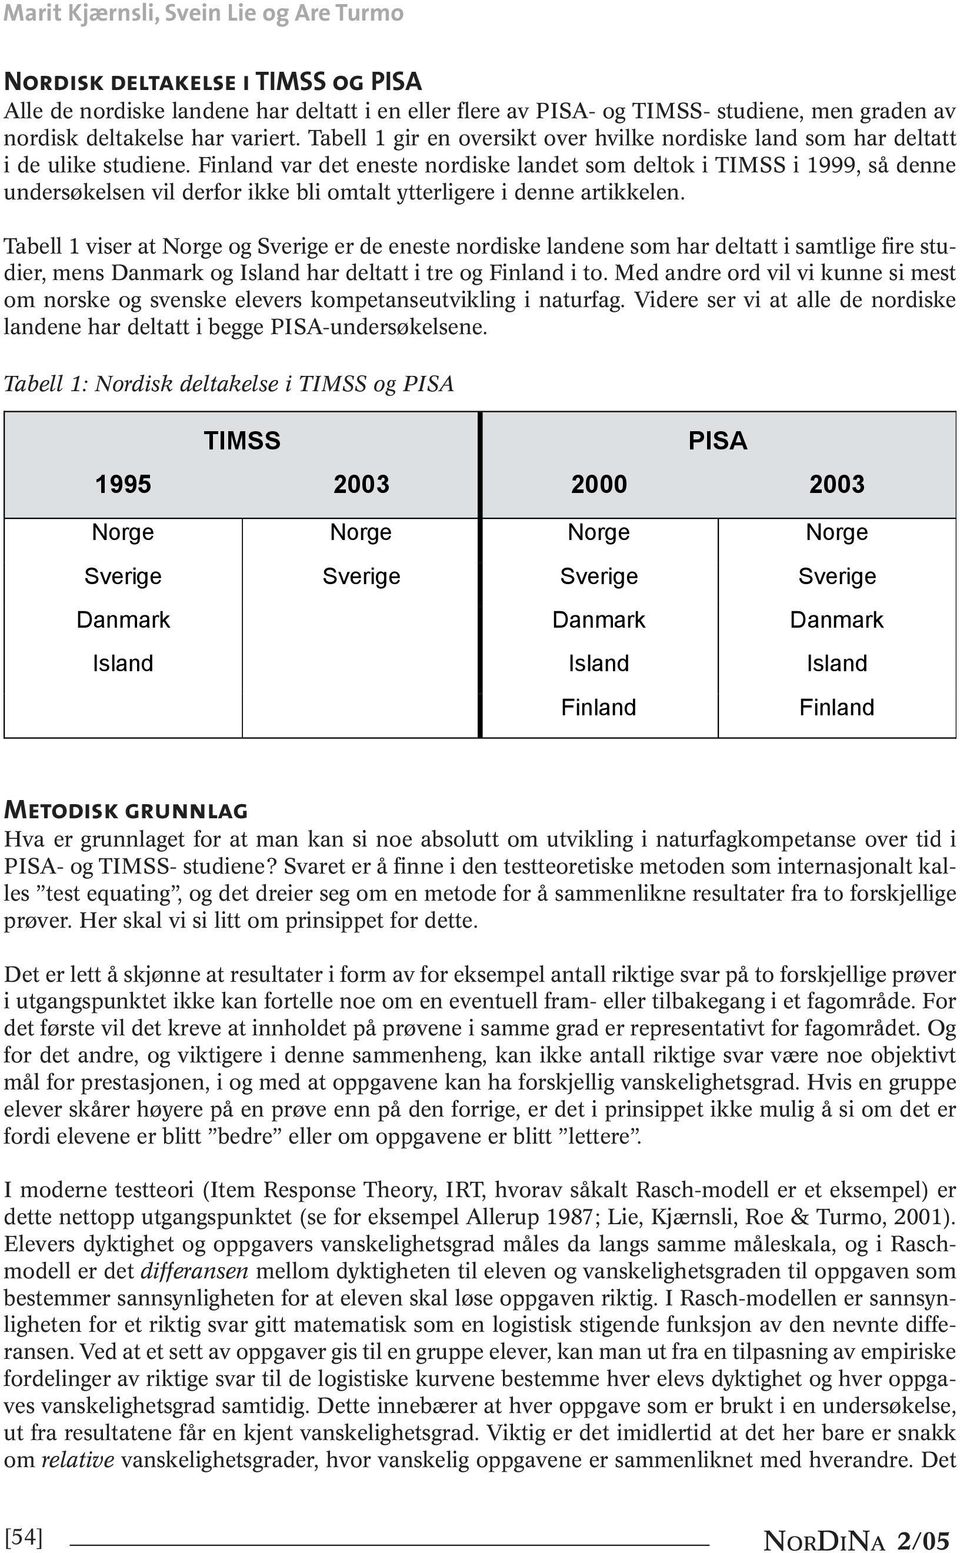 Finland var det eneste nordiske landet som deltok i TIMSS i 1999, så denne undersøkelsen vil derfor ikke bli omtalt ytterligere i denne artikkelen.